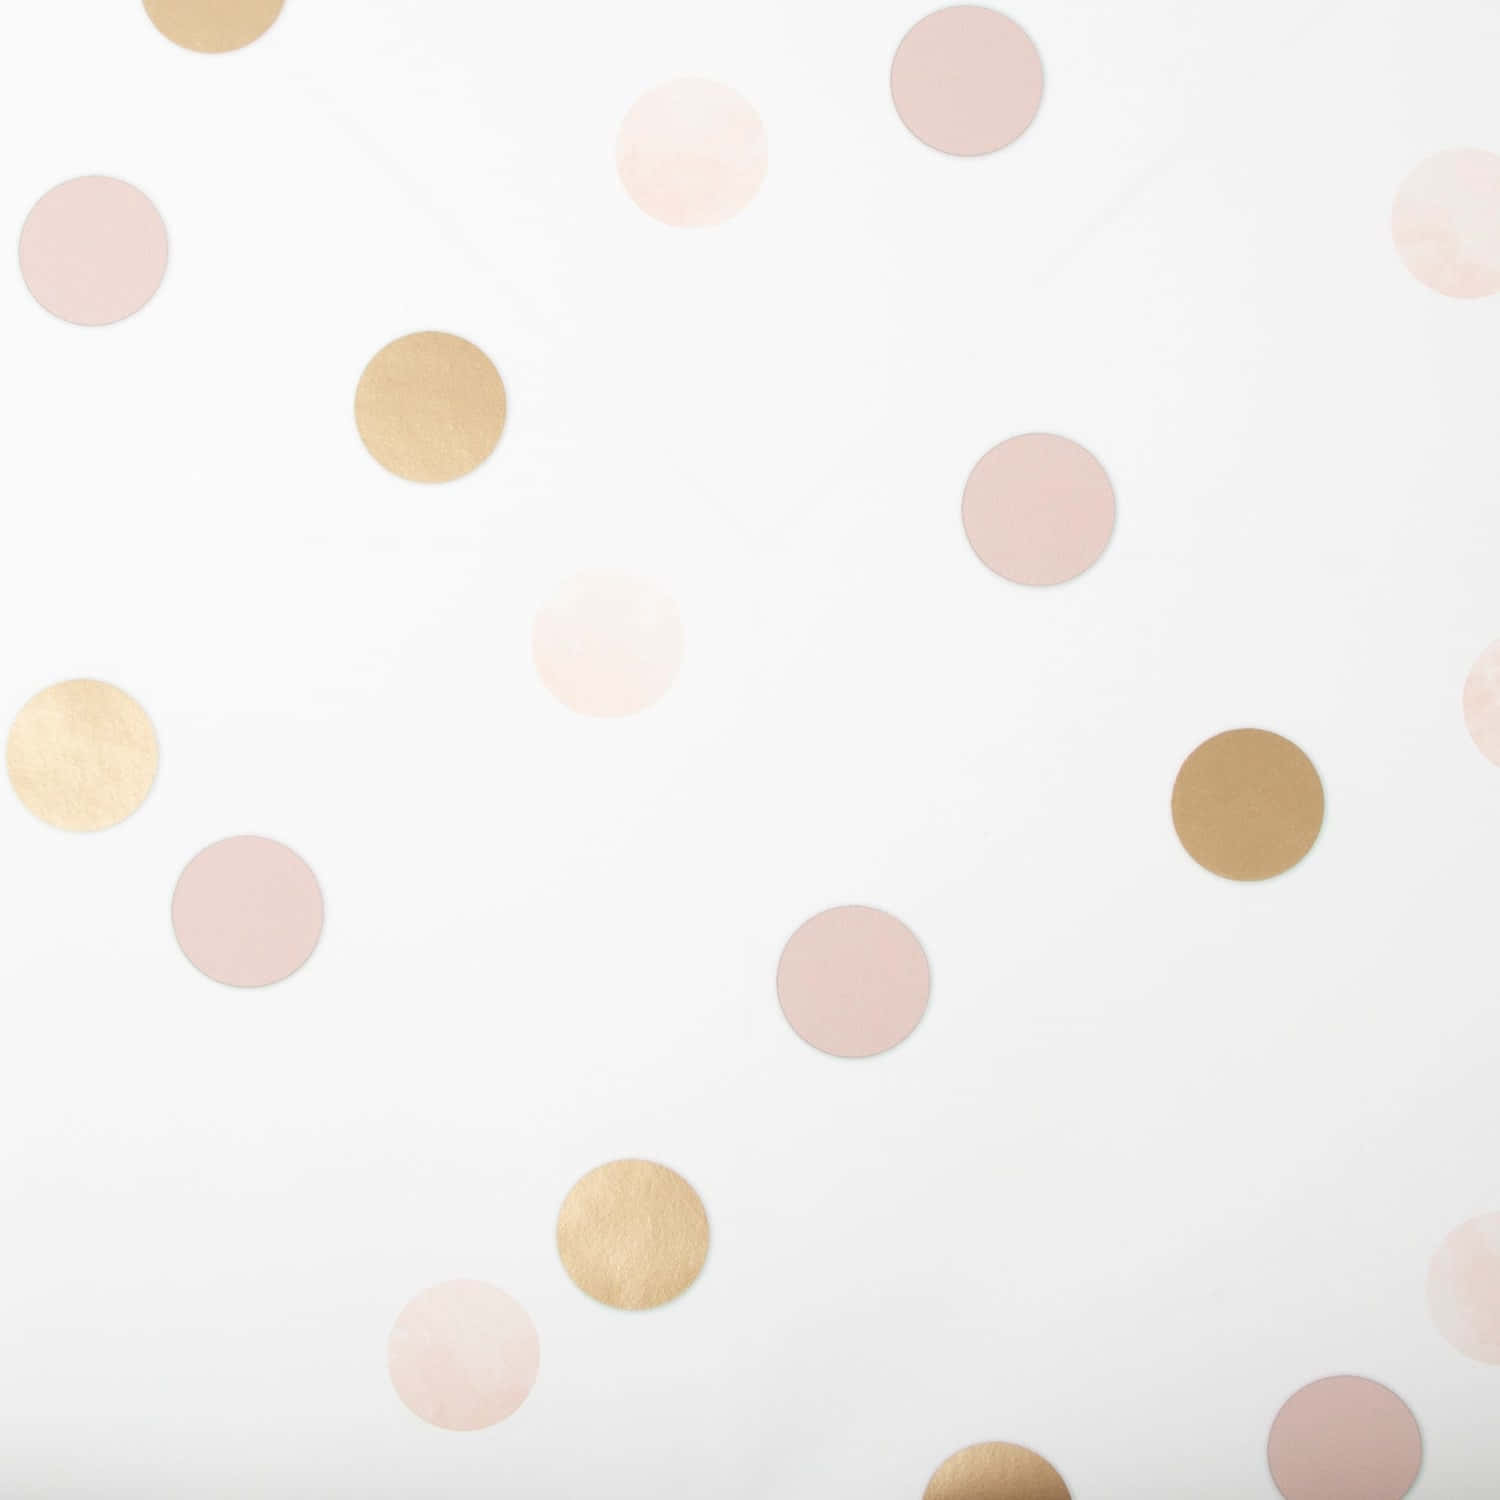 Einelebendige Darstellung Eines Rosa Und Weißen Polka Dot Musters Wallpaper